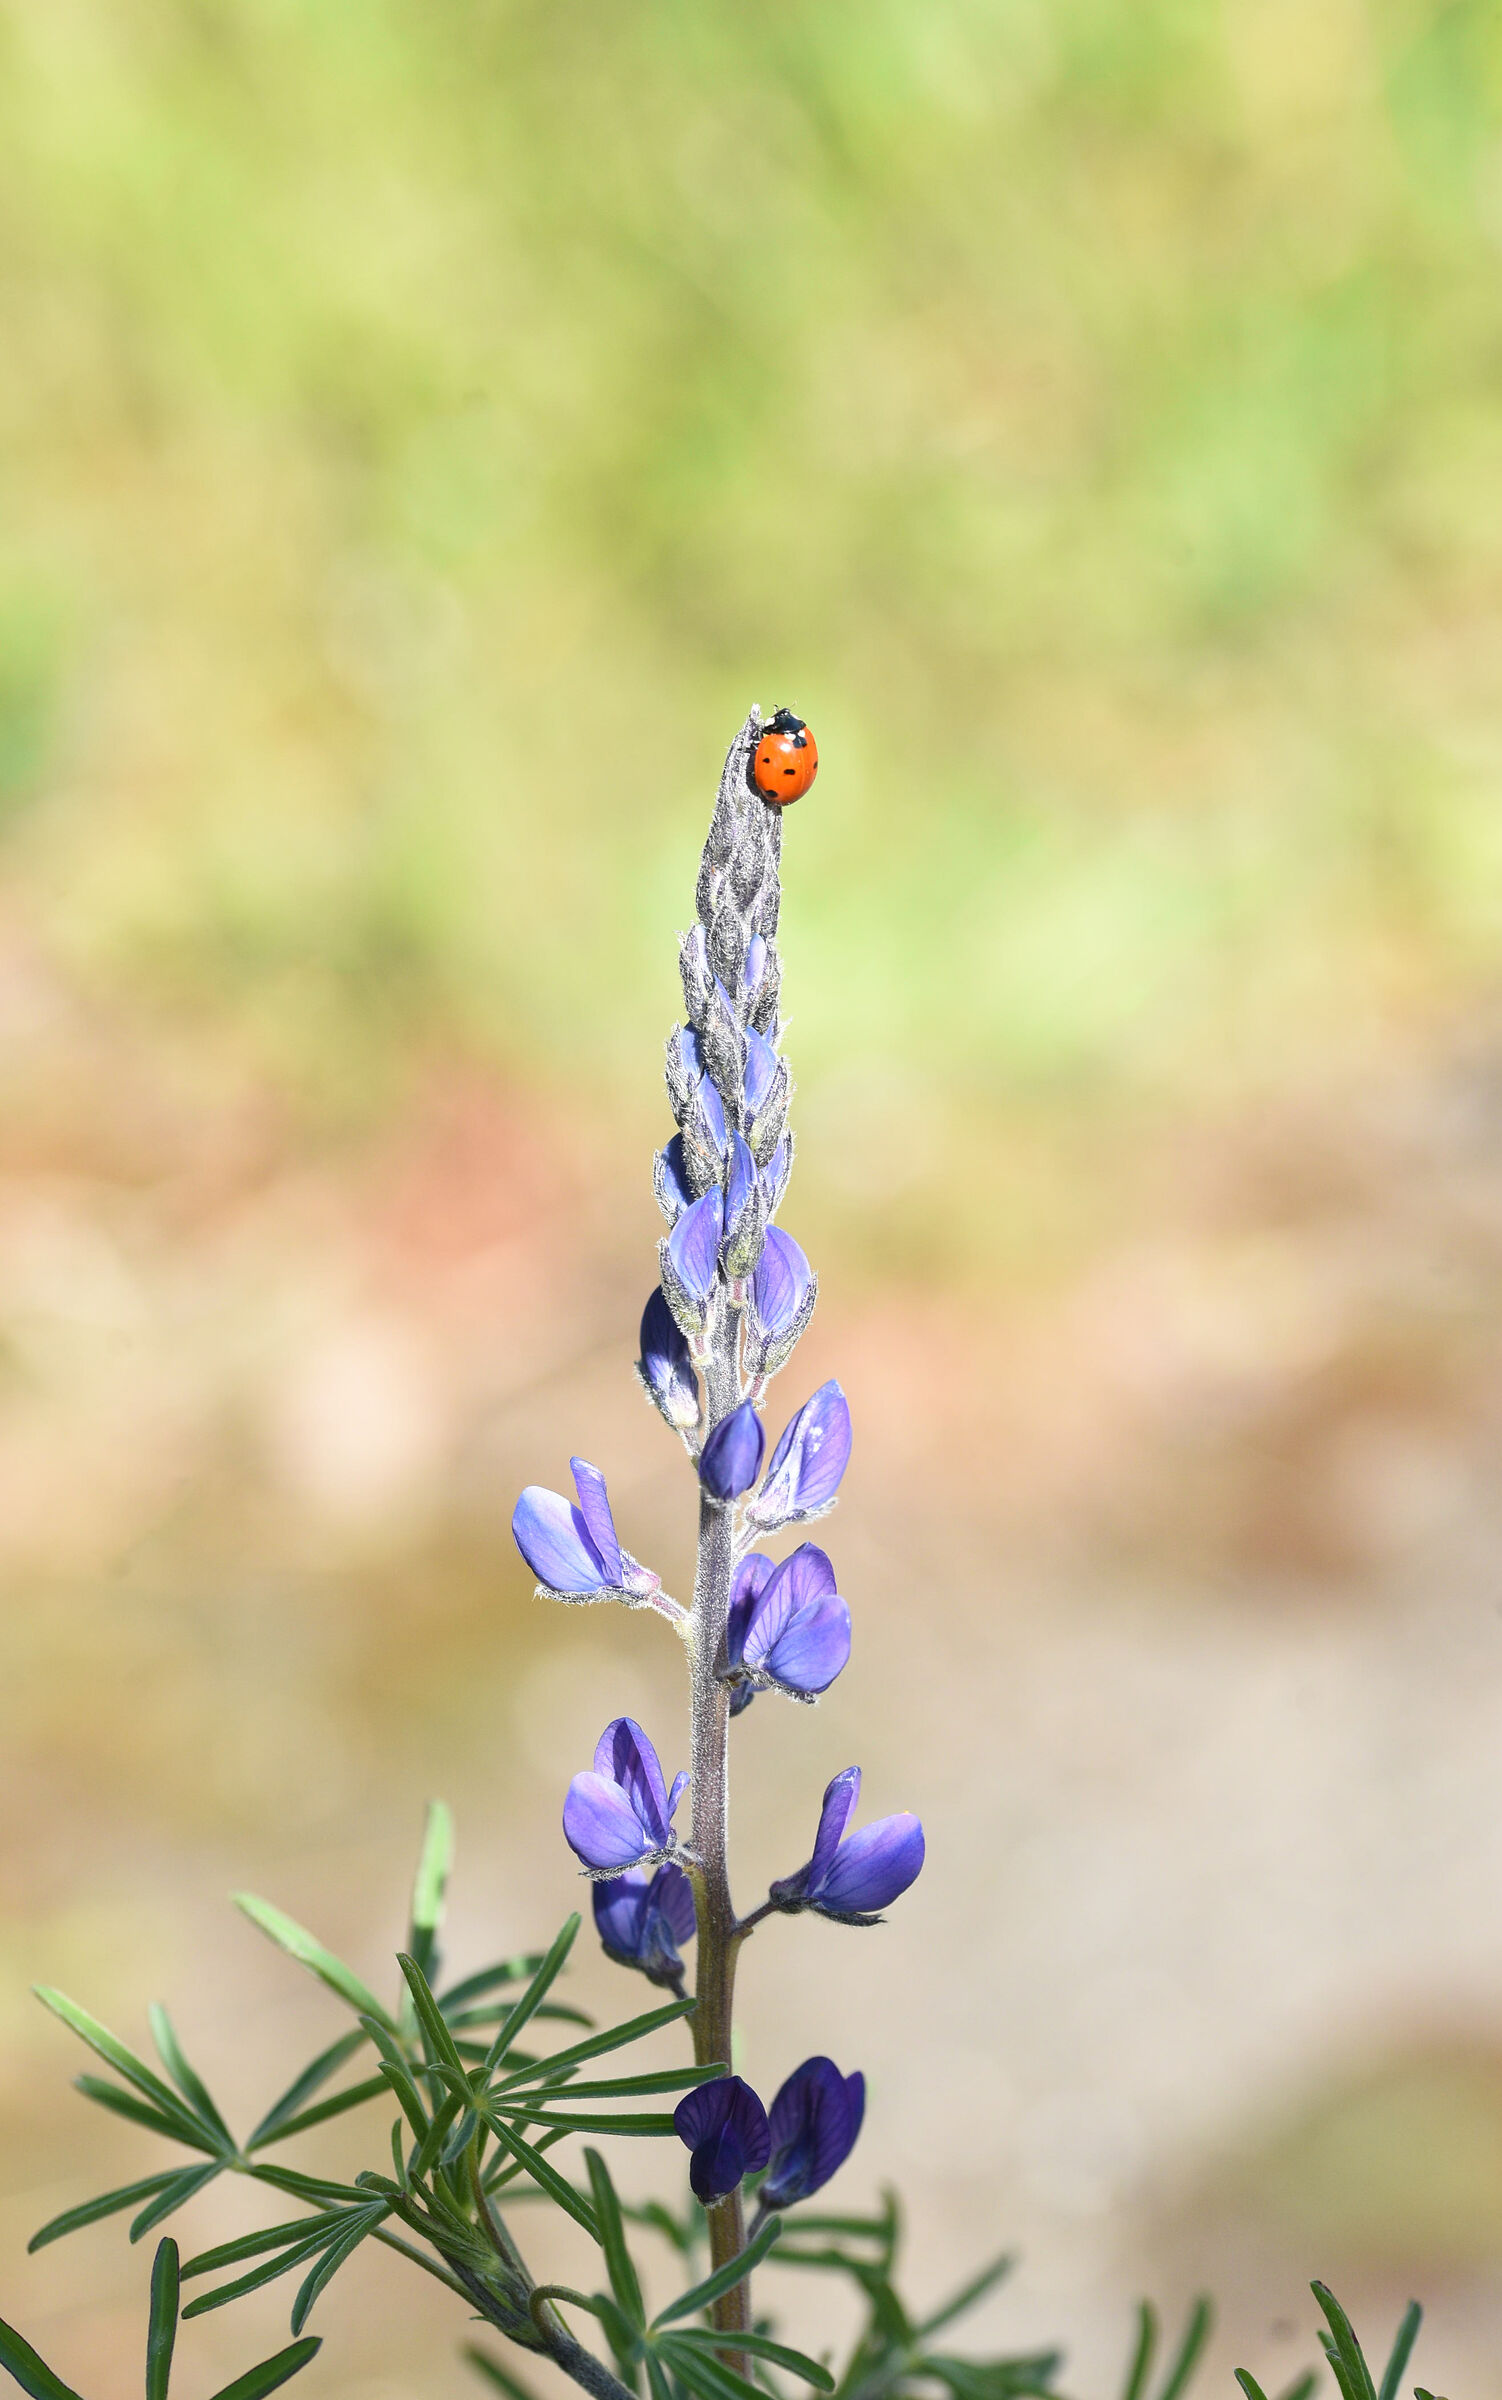 A ladybug on Earth...